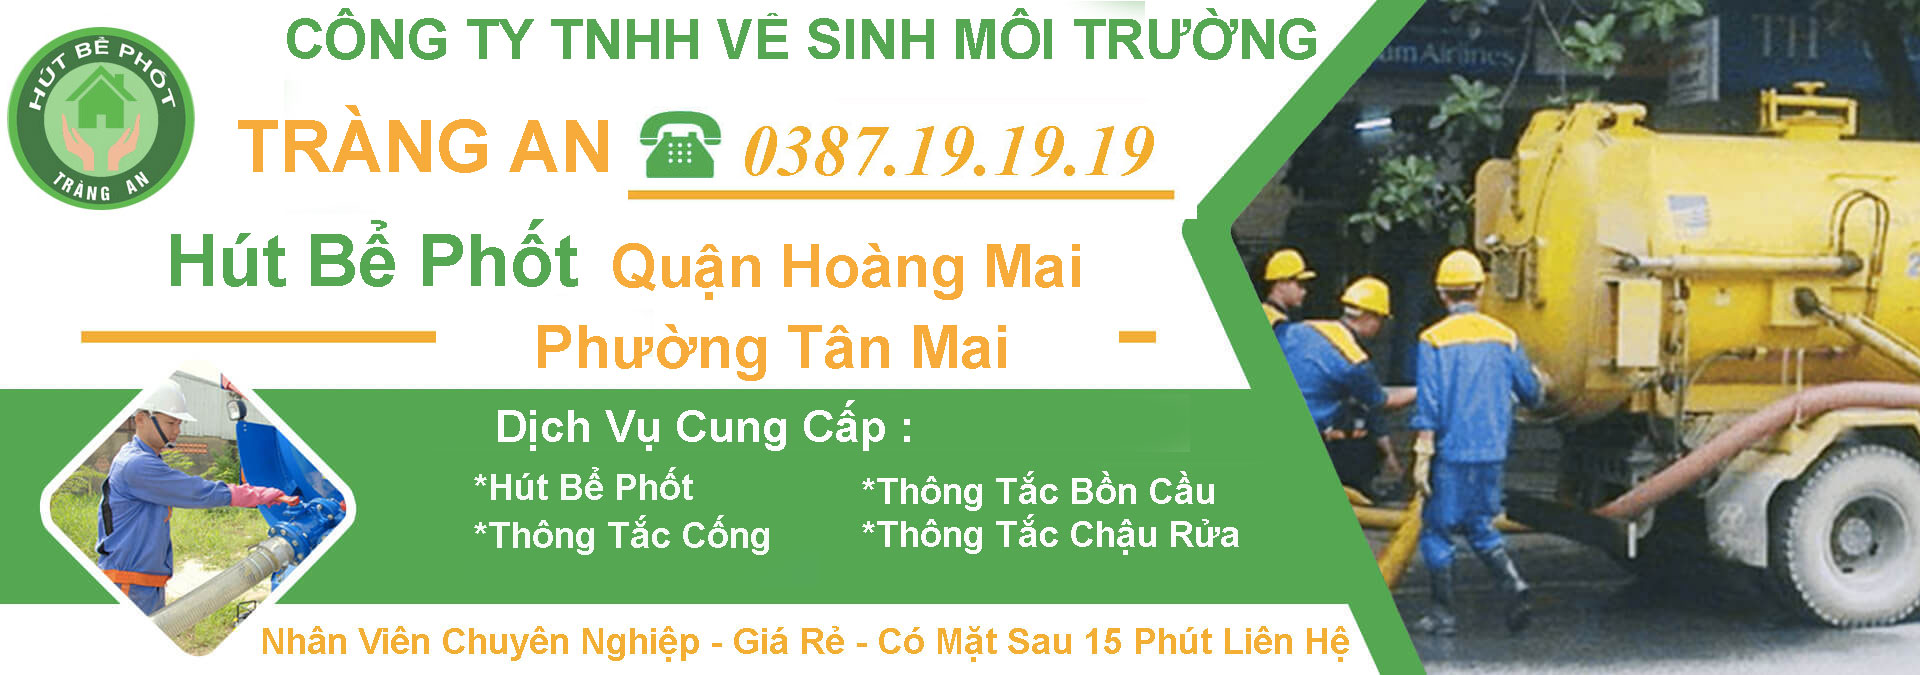 Hut Be Phot Quan Hoang Mai Tan Mai